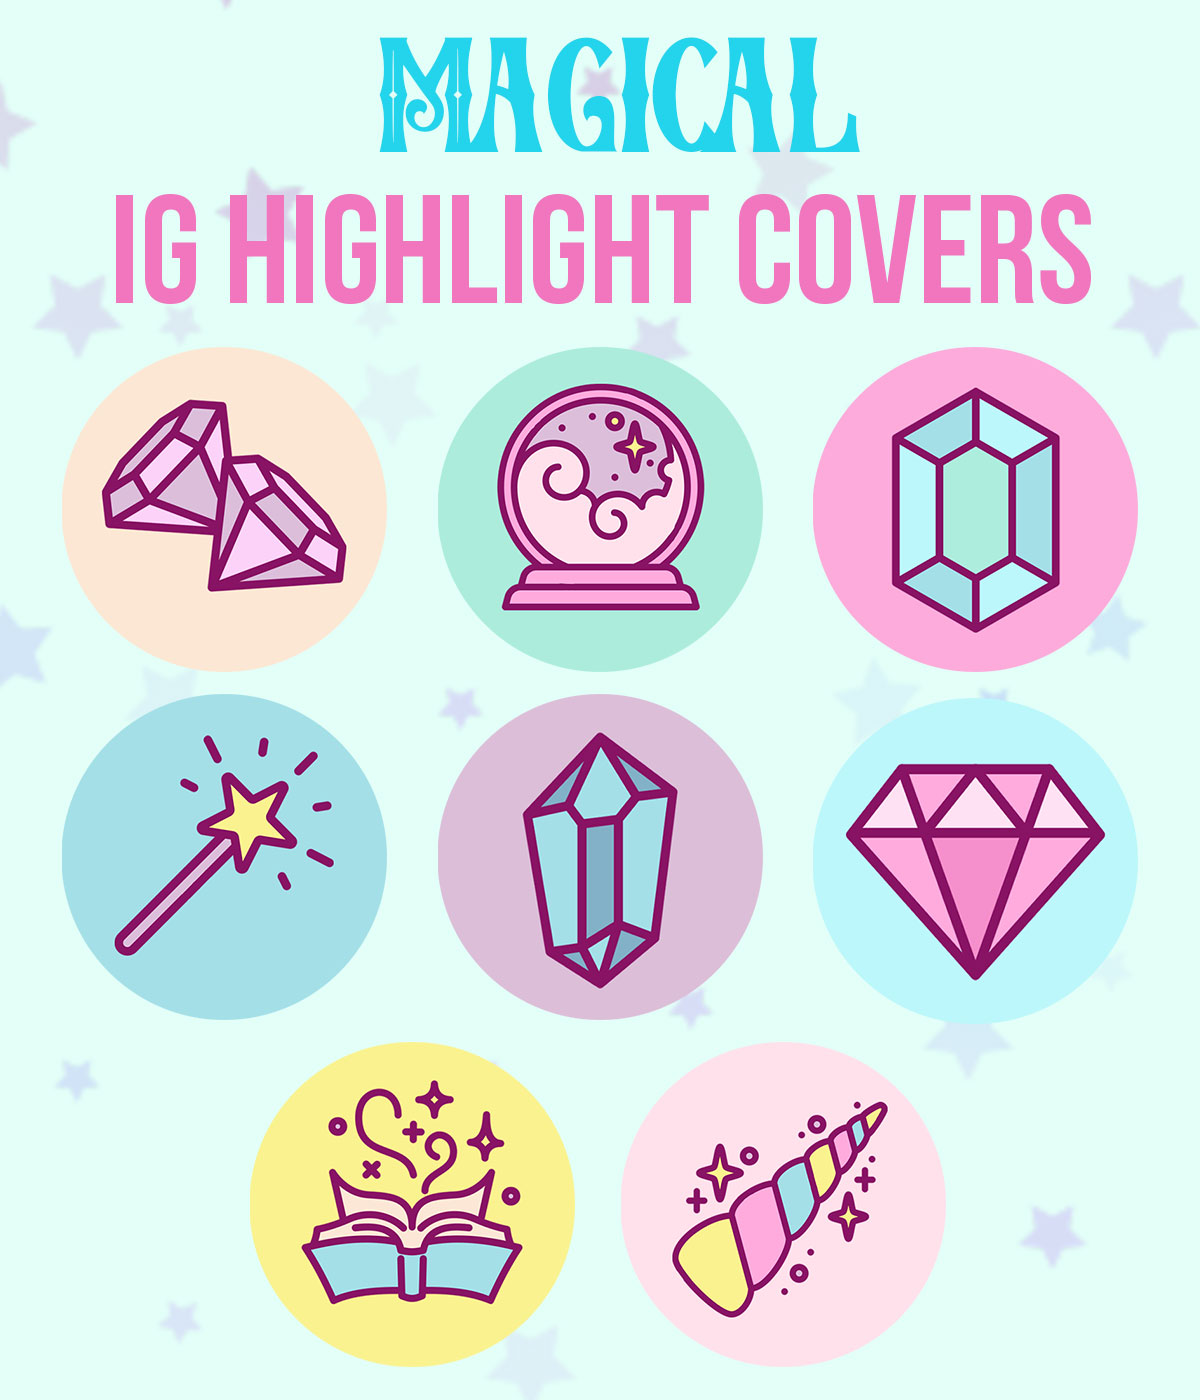 Paquete de portadas mágicas IG Highlight